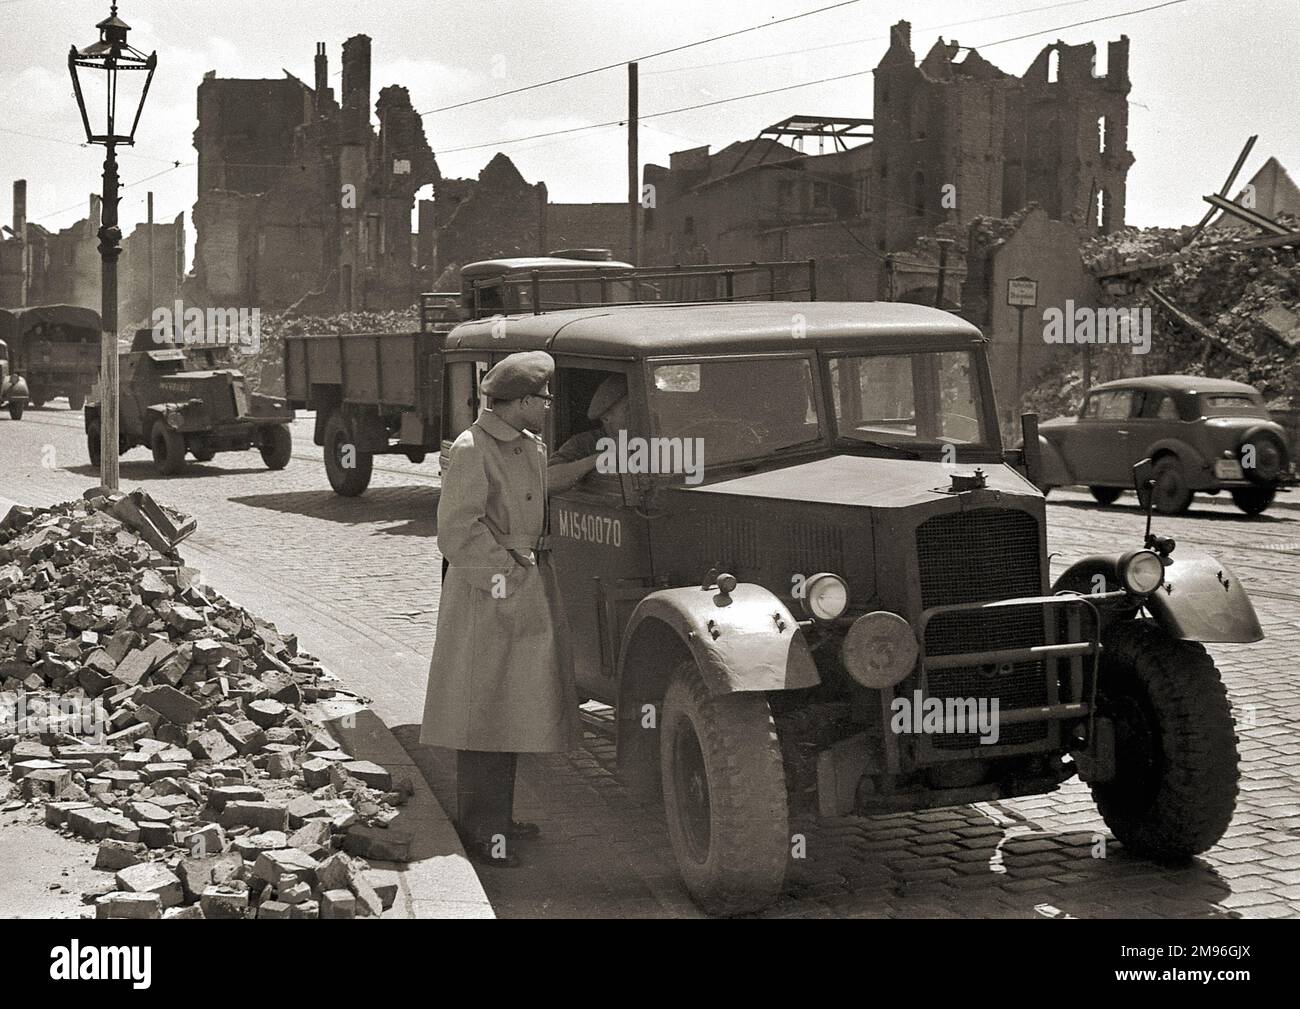 Una bomba ha danneggiato la strada in Germania durante la seconda guerra mondiale, con edifici in rovina, mucchi di macerie e alcuni veicoli sulla strada. Foto Stock